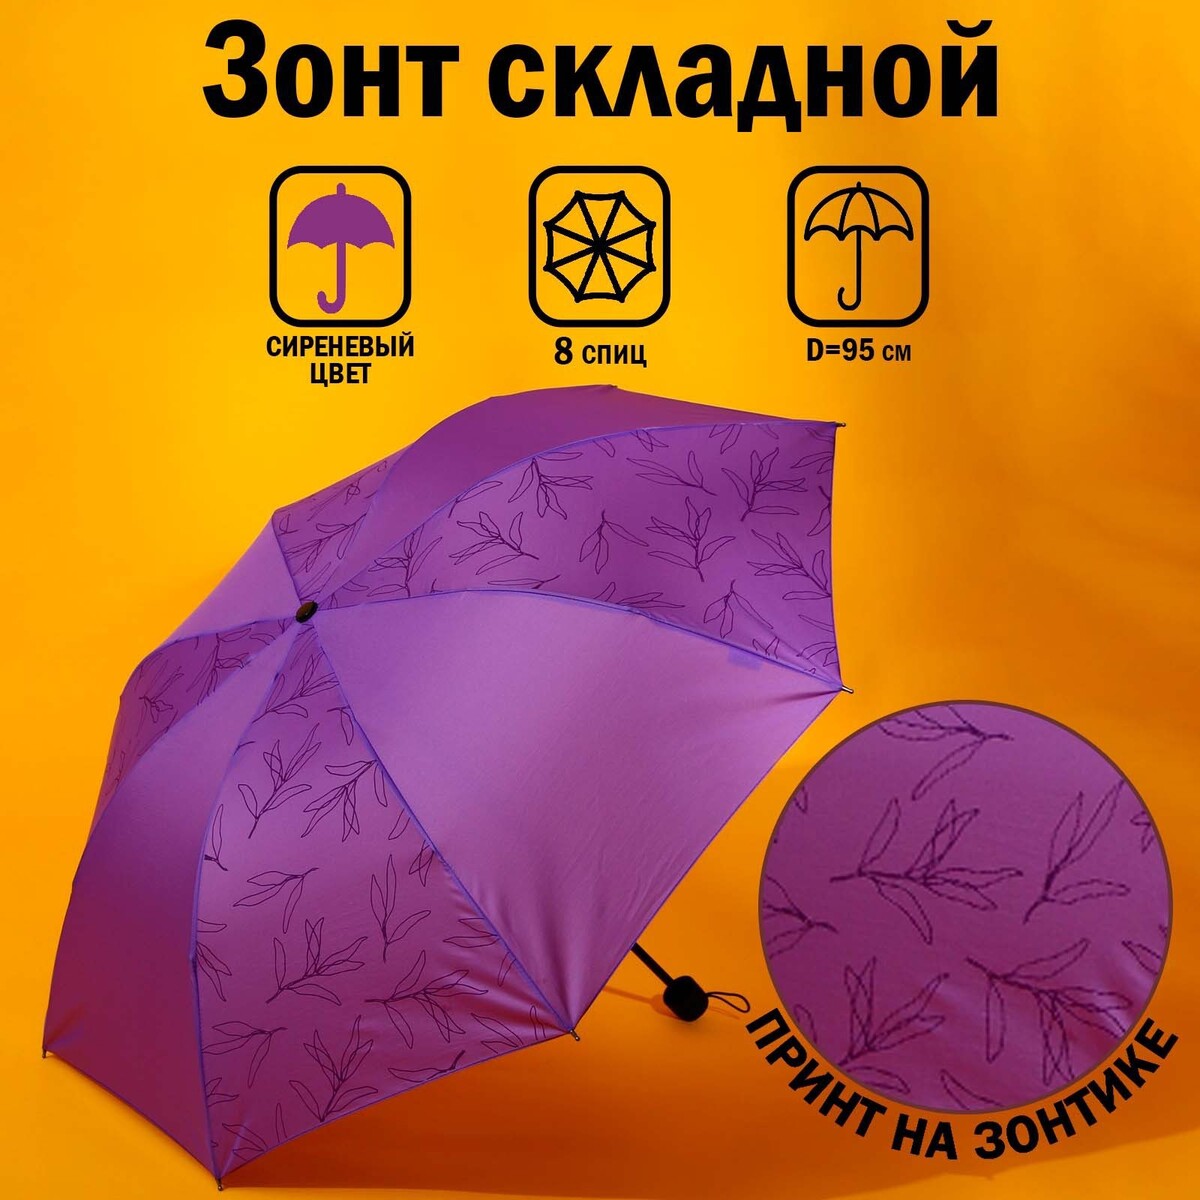 Зонт механический зонт для мужчин механический 8 спиц 65 см клетка tu65 6